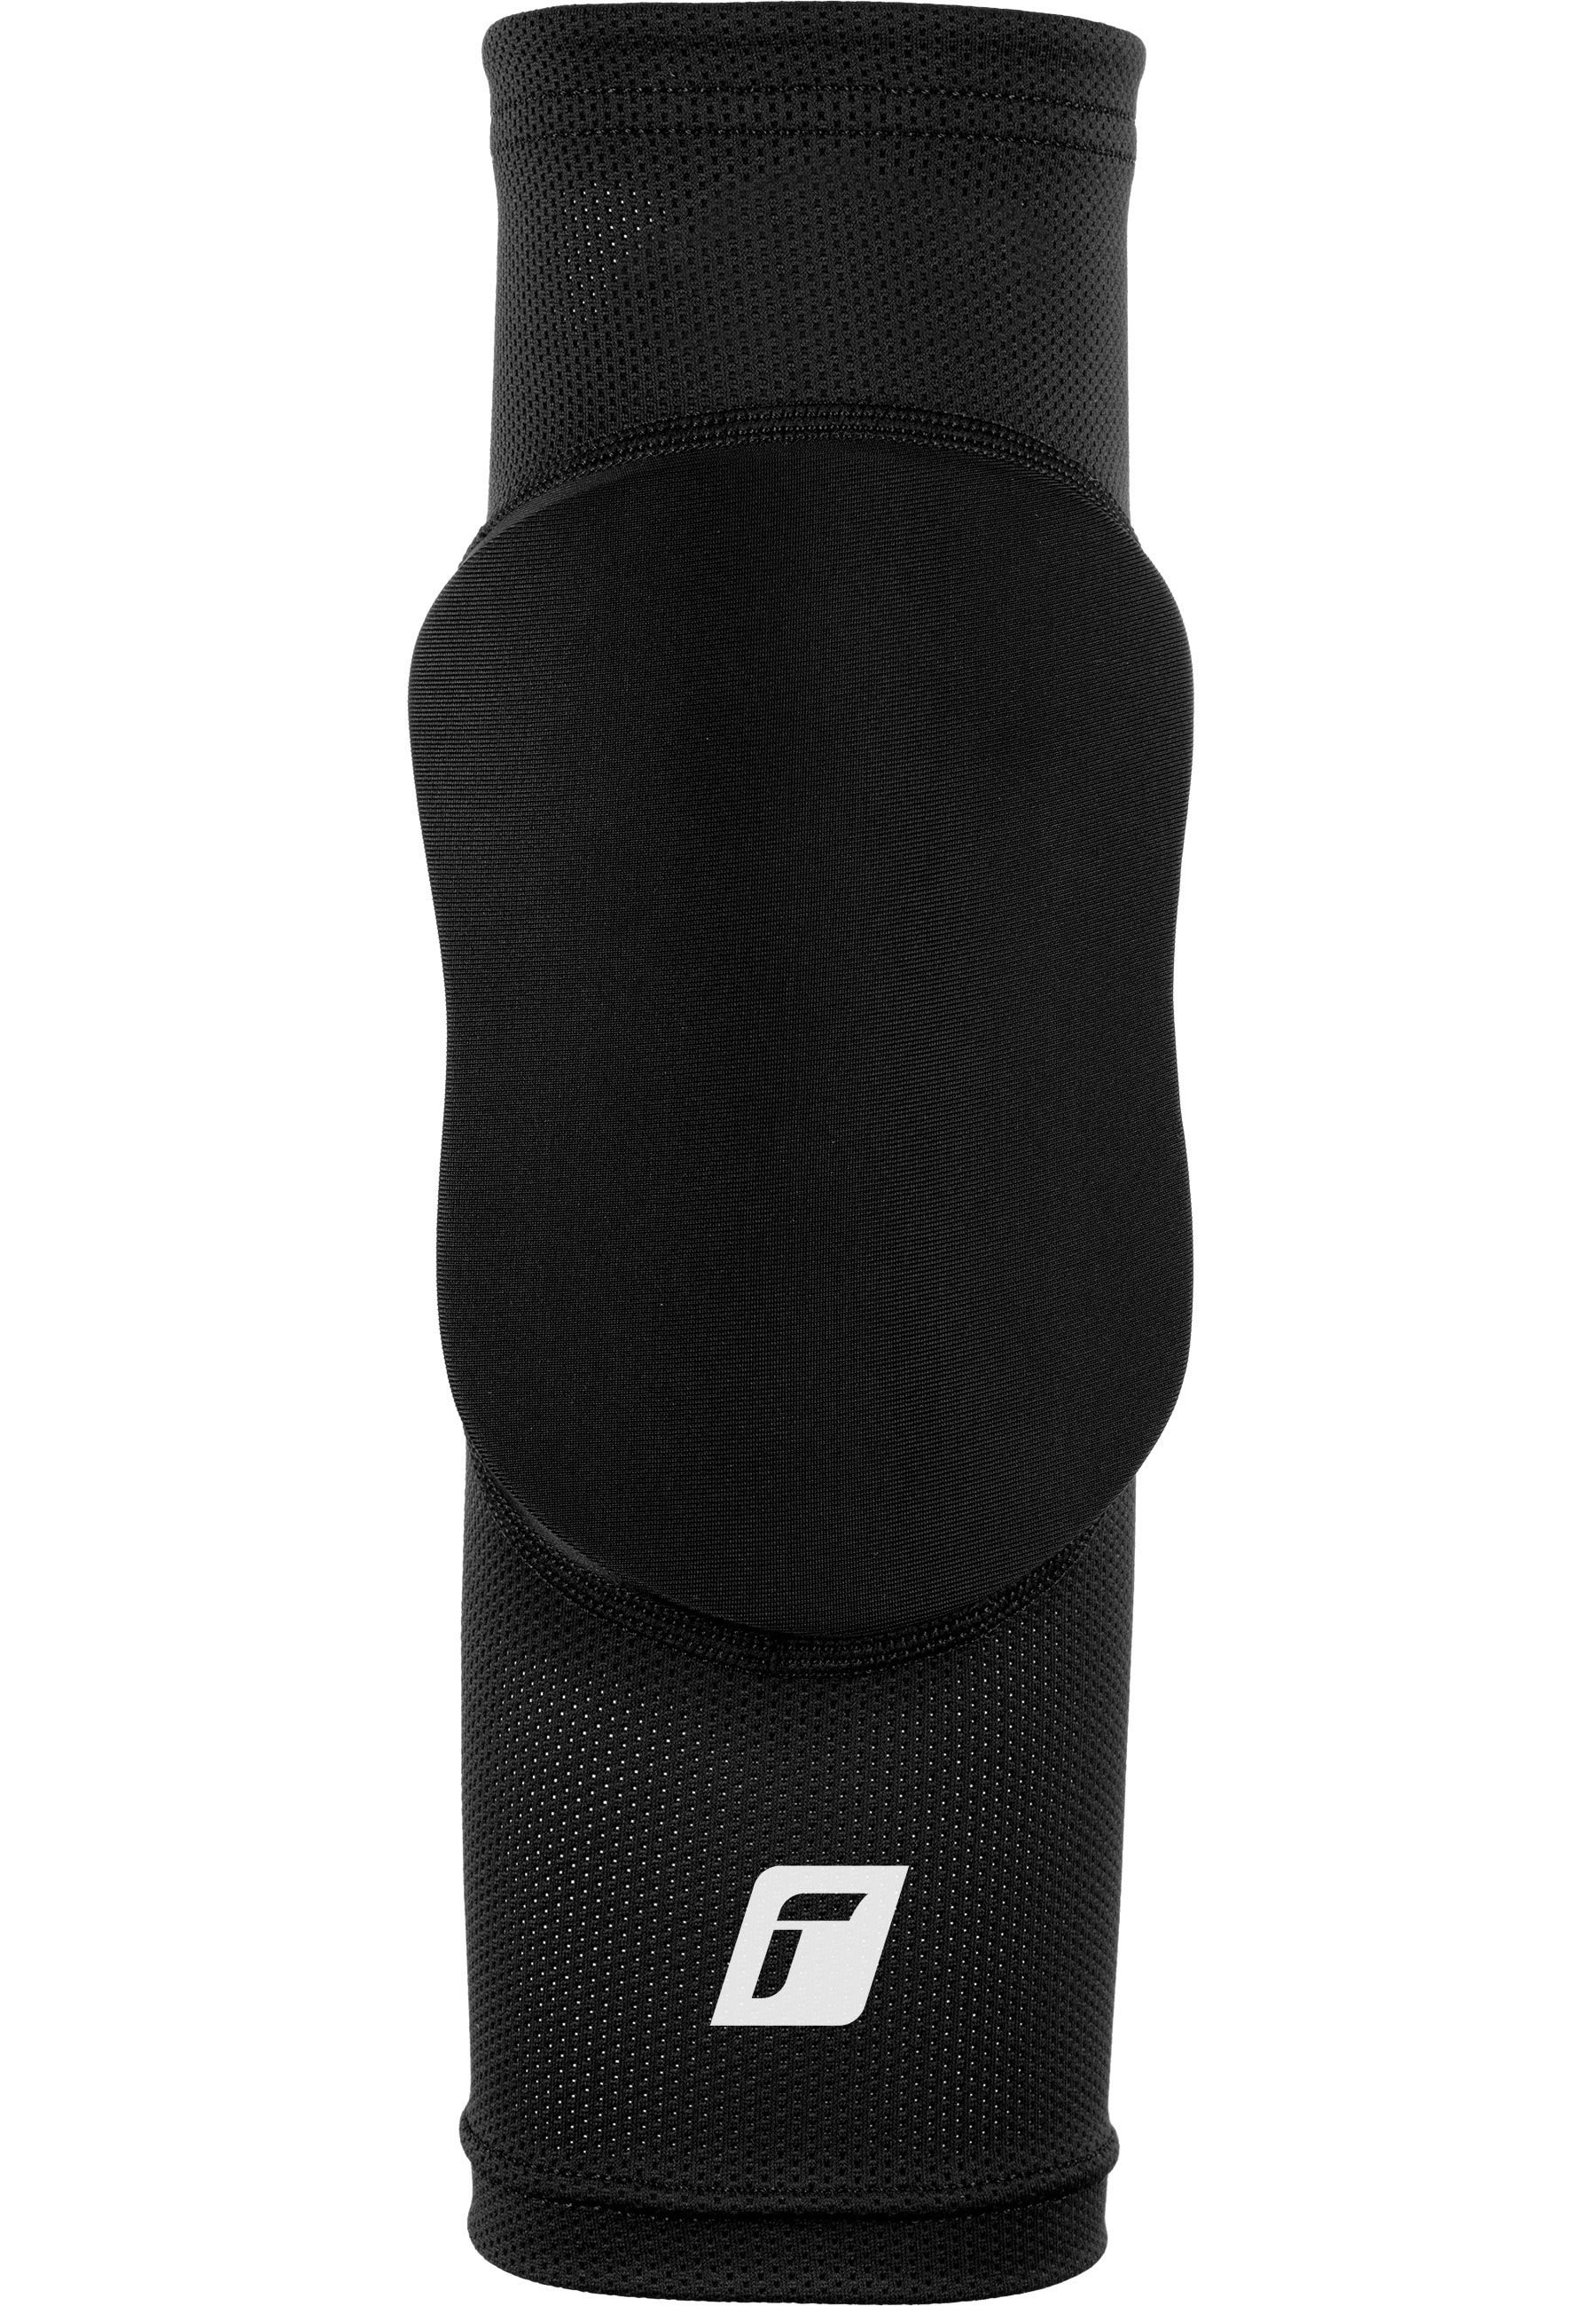 Reusch Knieprotektor »Knee Protector Sleeve«, für optimale Bewegungsfreiheit